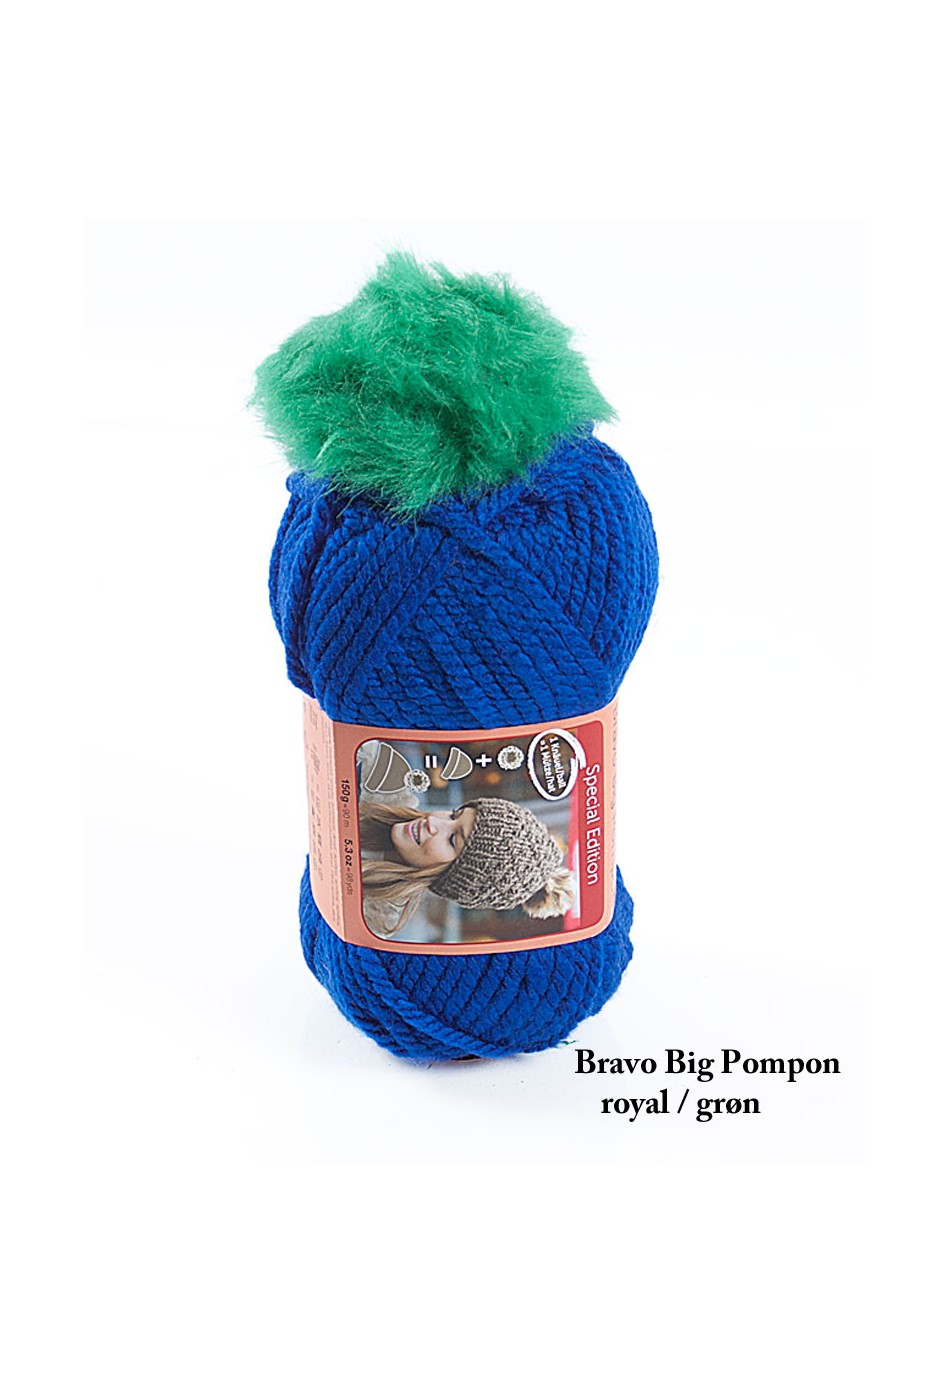 mammal klap Slud Bravo Big Pompon strikkegarn tilbud med gratis opskrift til hue